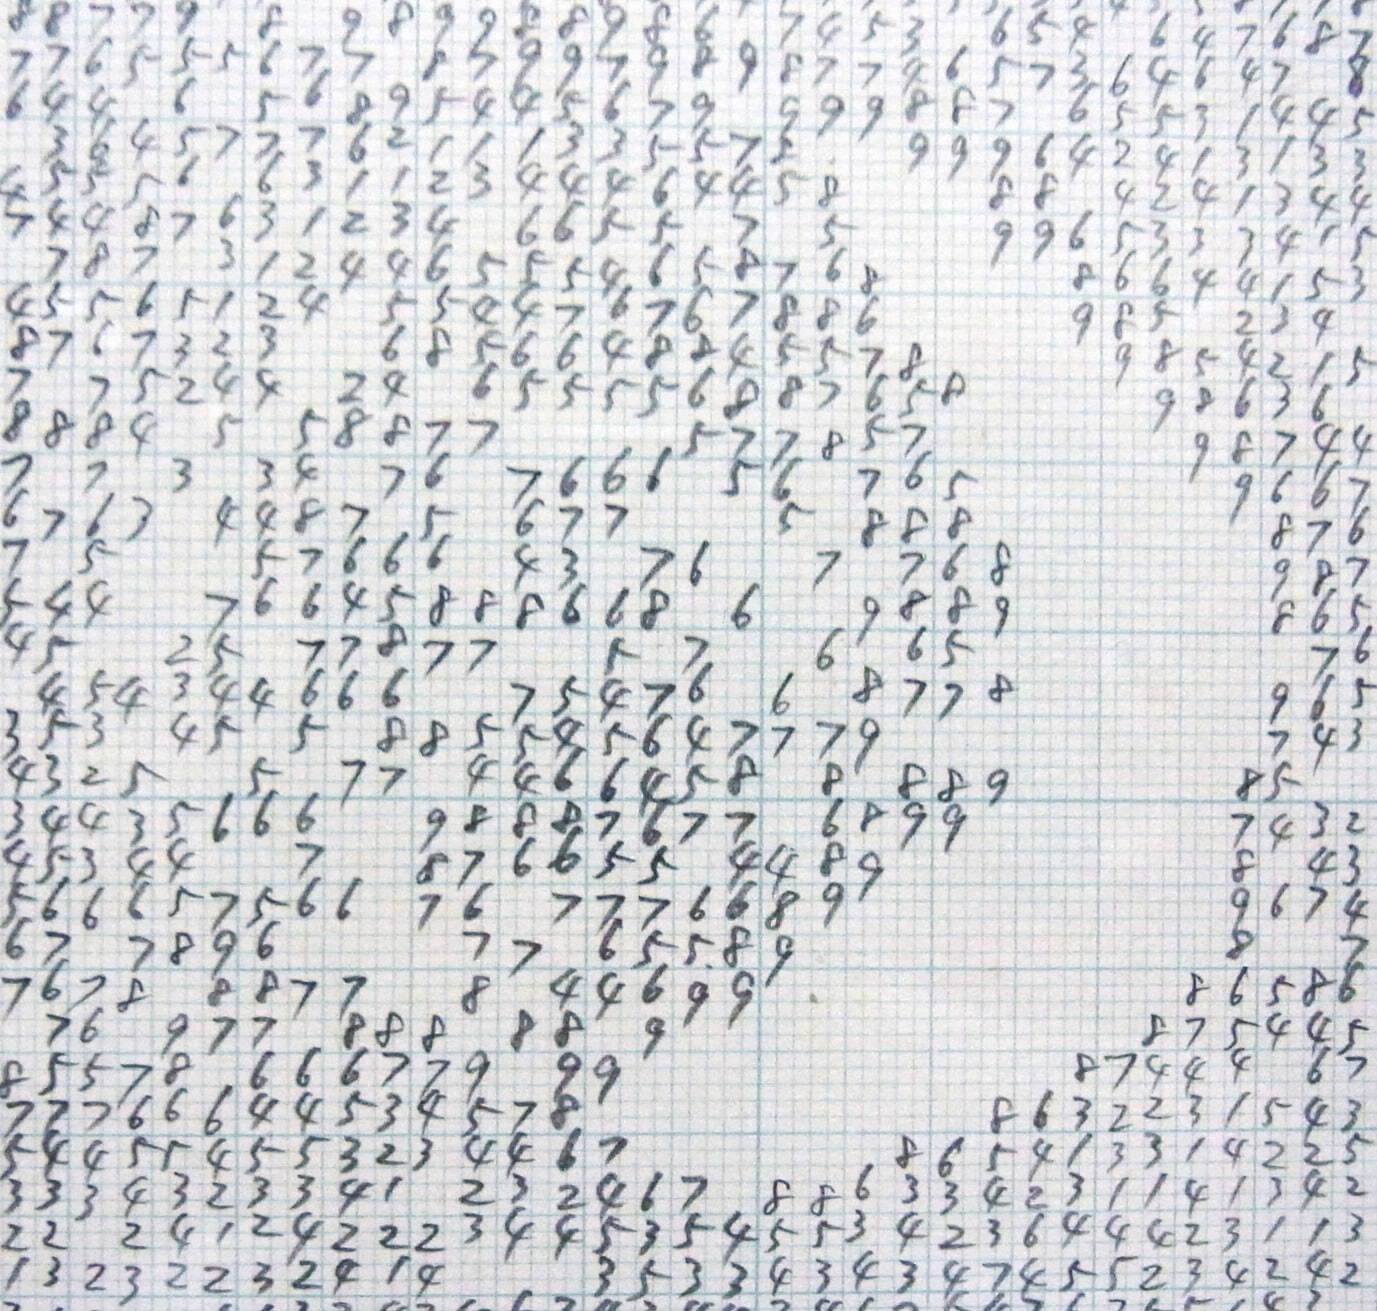 『ジーンズ 下絵(数字)』(部分) 1984年 鉛筆、紙